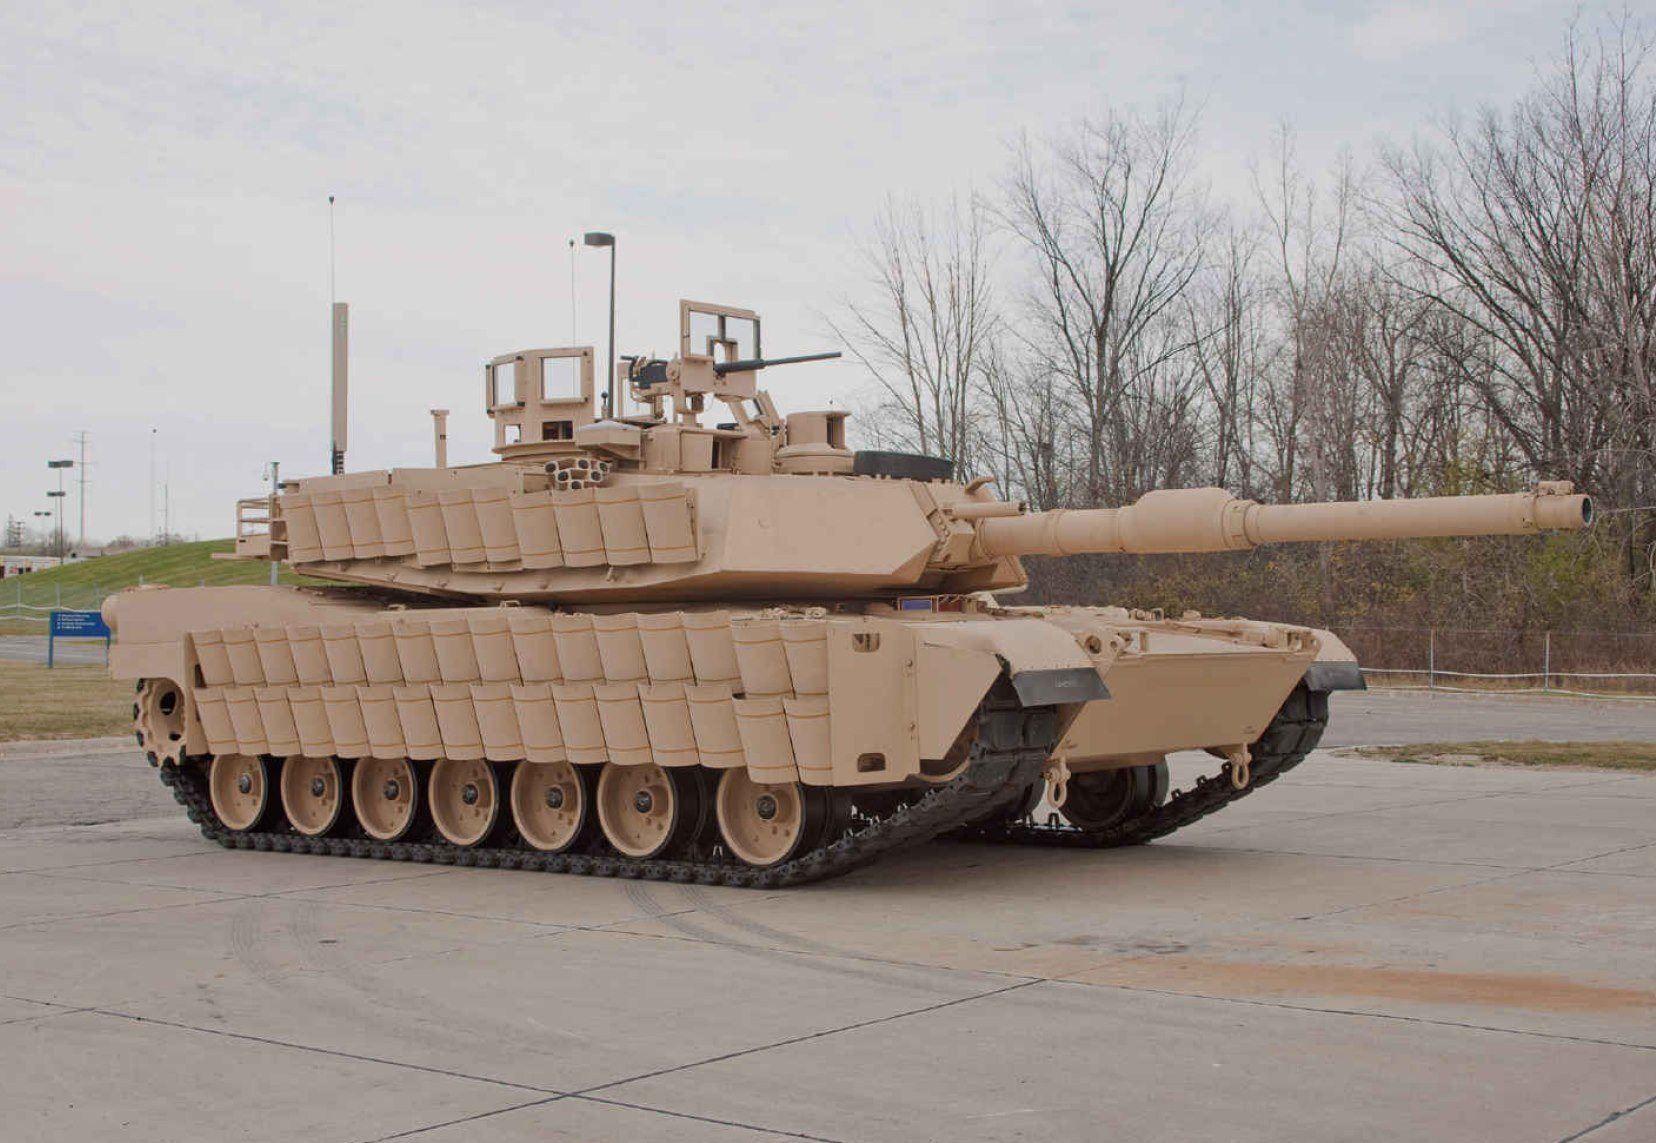 Танк M1 Abrams із бронезахистом Tank Urban Survival Kit (TUSK)